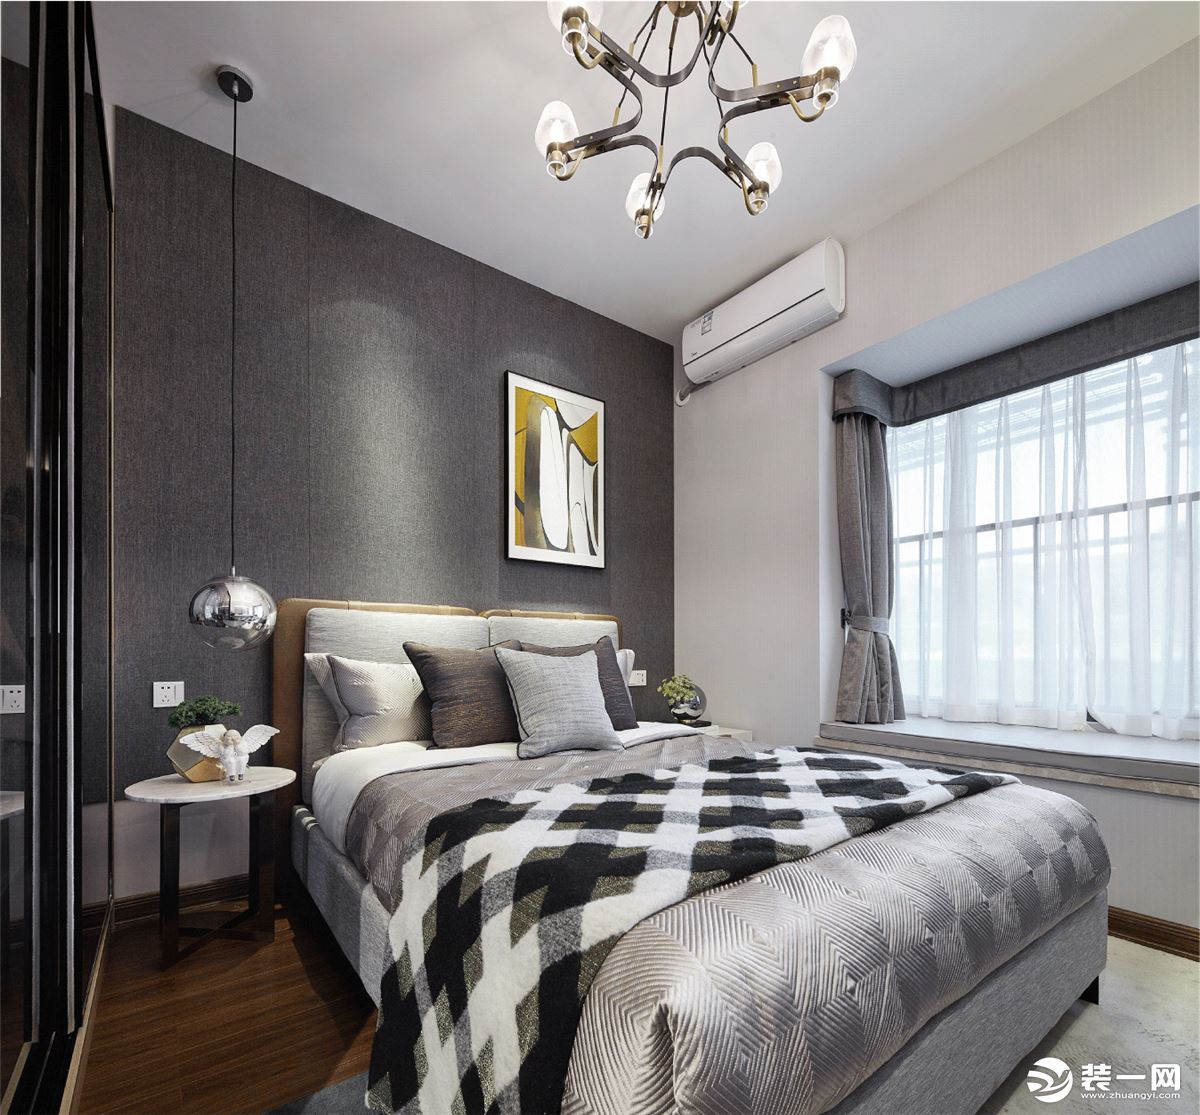 卧室床头墙是软包基础，浅灰色的布艺的靠背，搭配柔软的床品，营造出治愈的舒睡空间。在简约素雅的空间下，